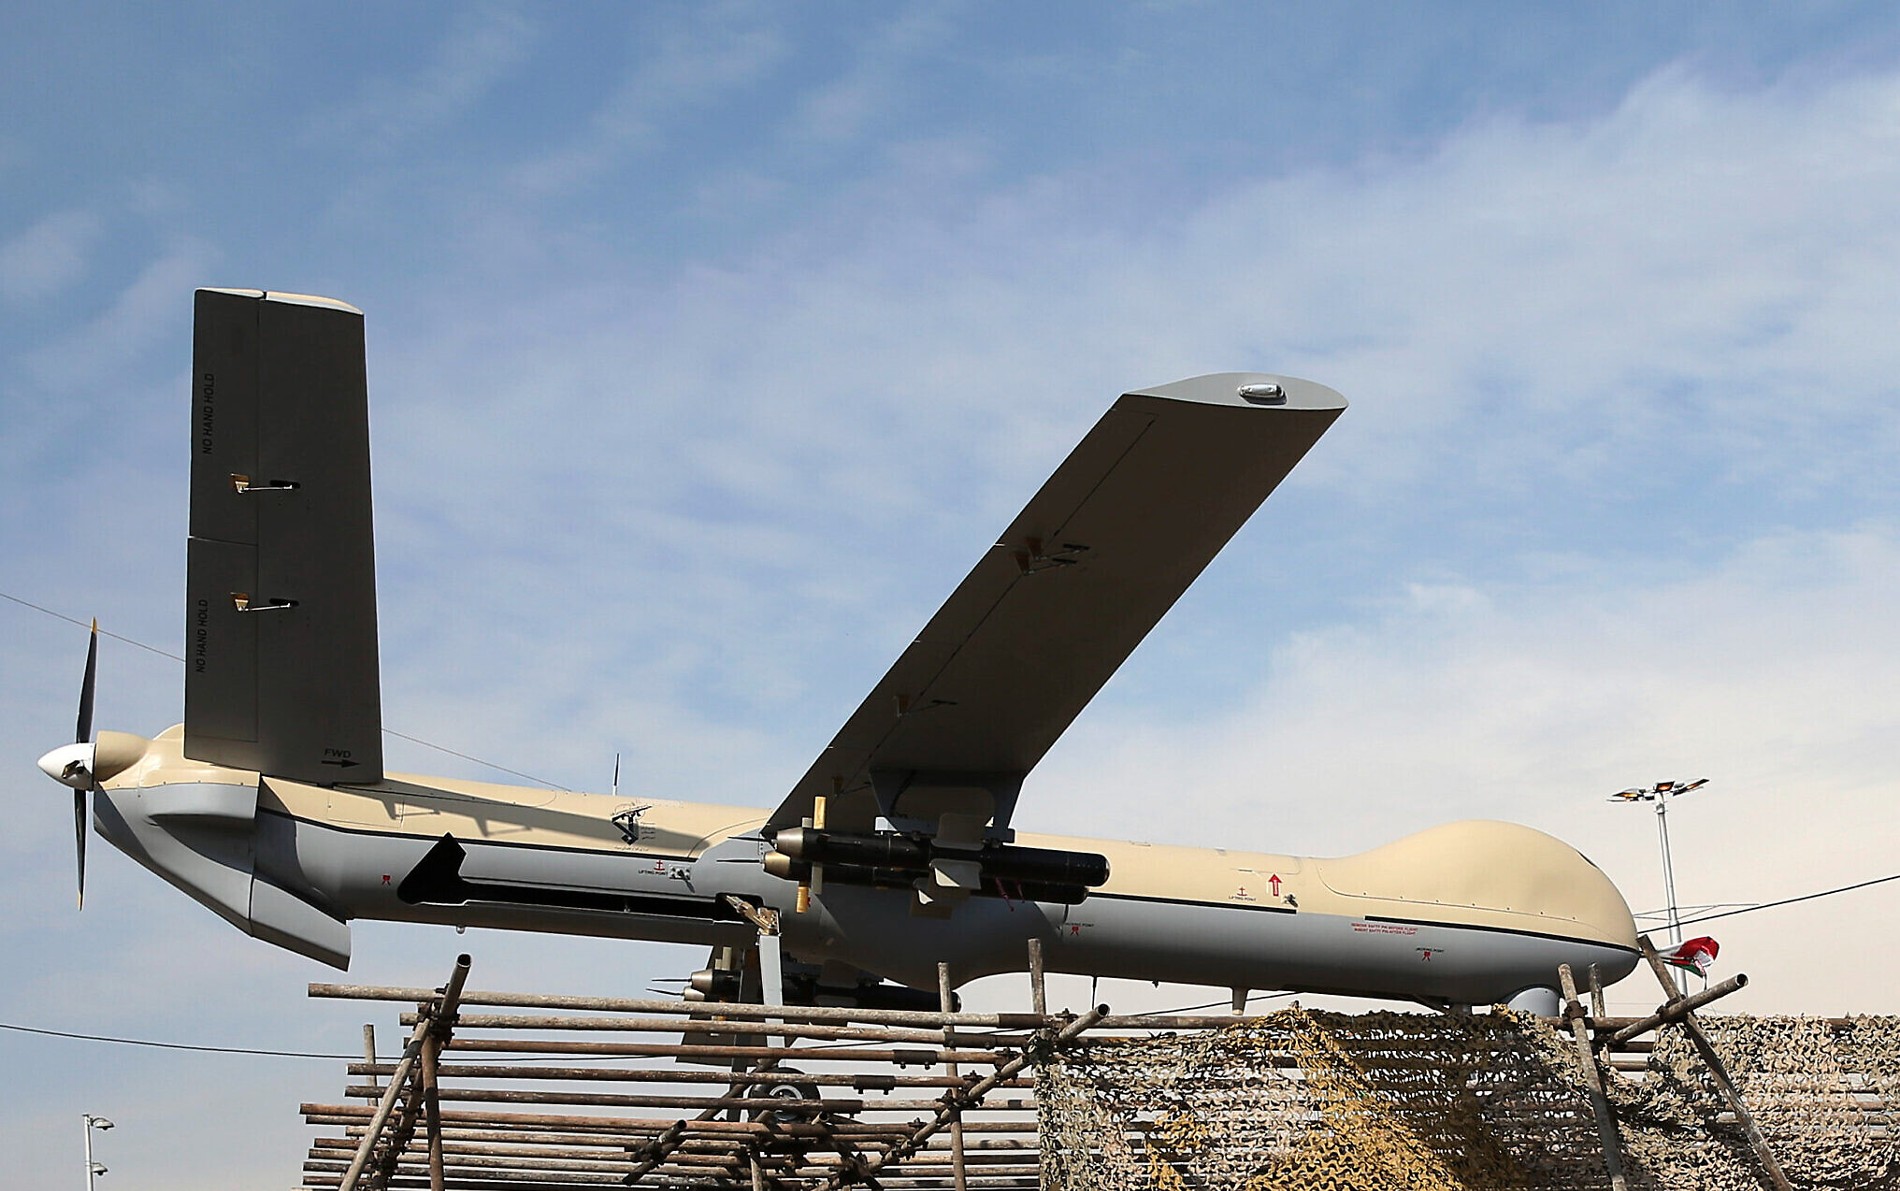 Επίθεση του Ιράν με drone και πυραύλους στο Ισραήλ - Από ώρα σε ώρα αναμένεται να φτάσουν τα ιρανικά drone - Είμαστε έτοιμοι, λέει ο Νετανιάχου